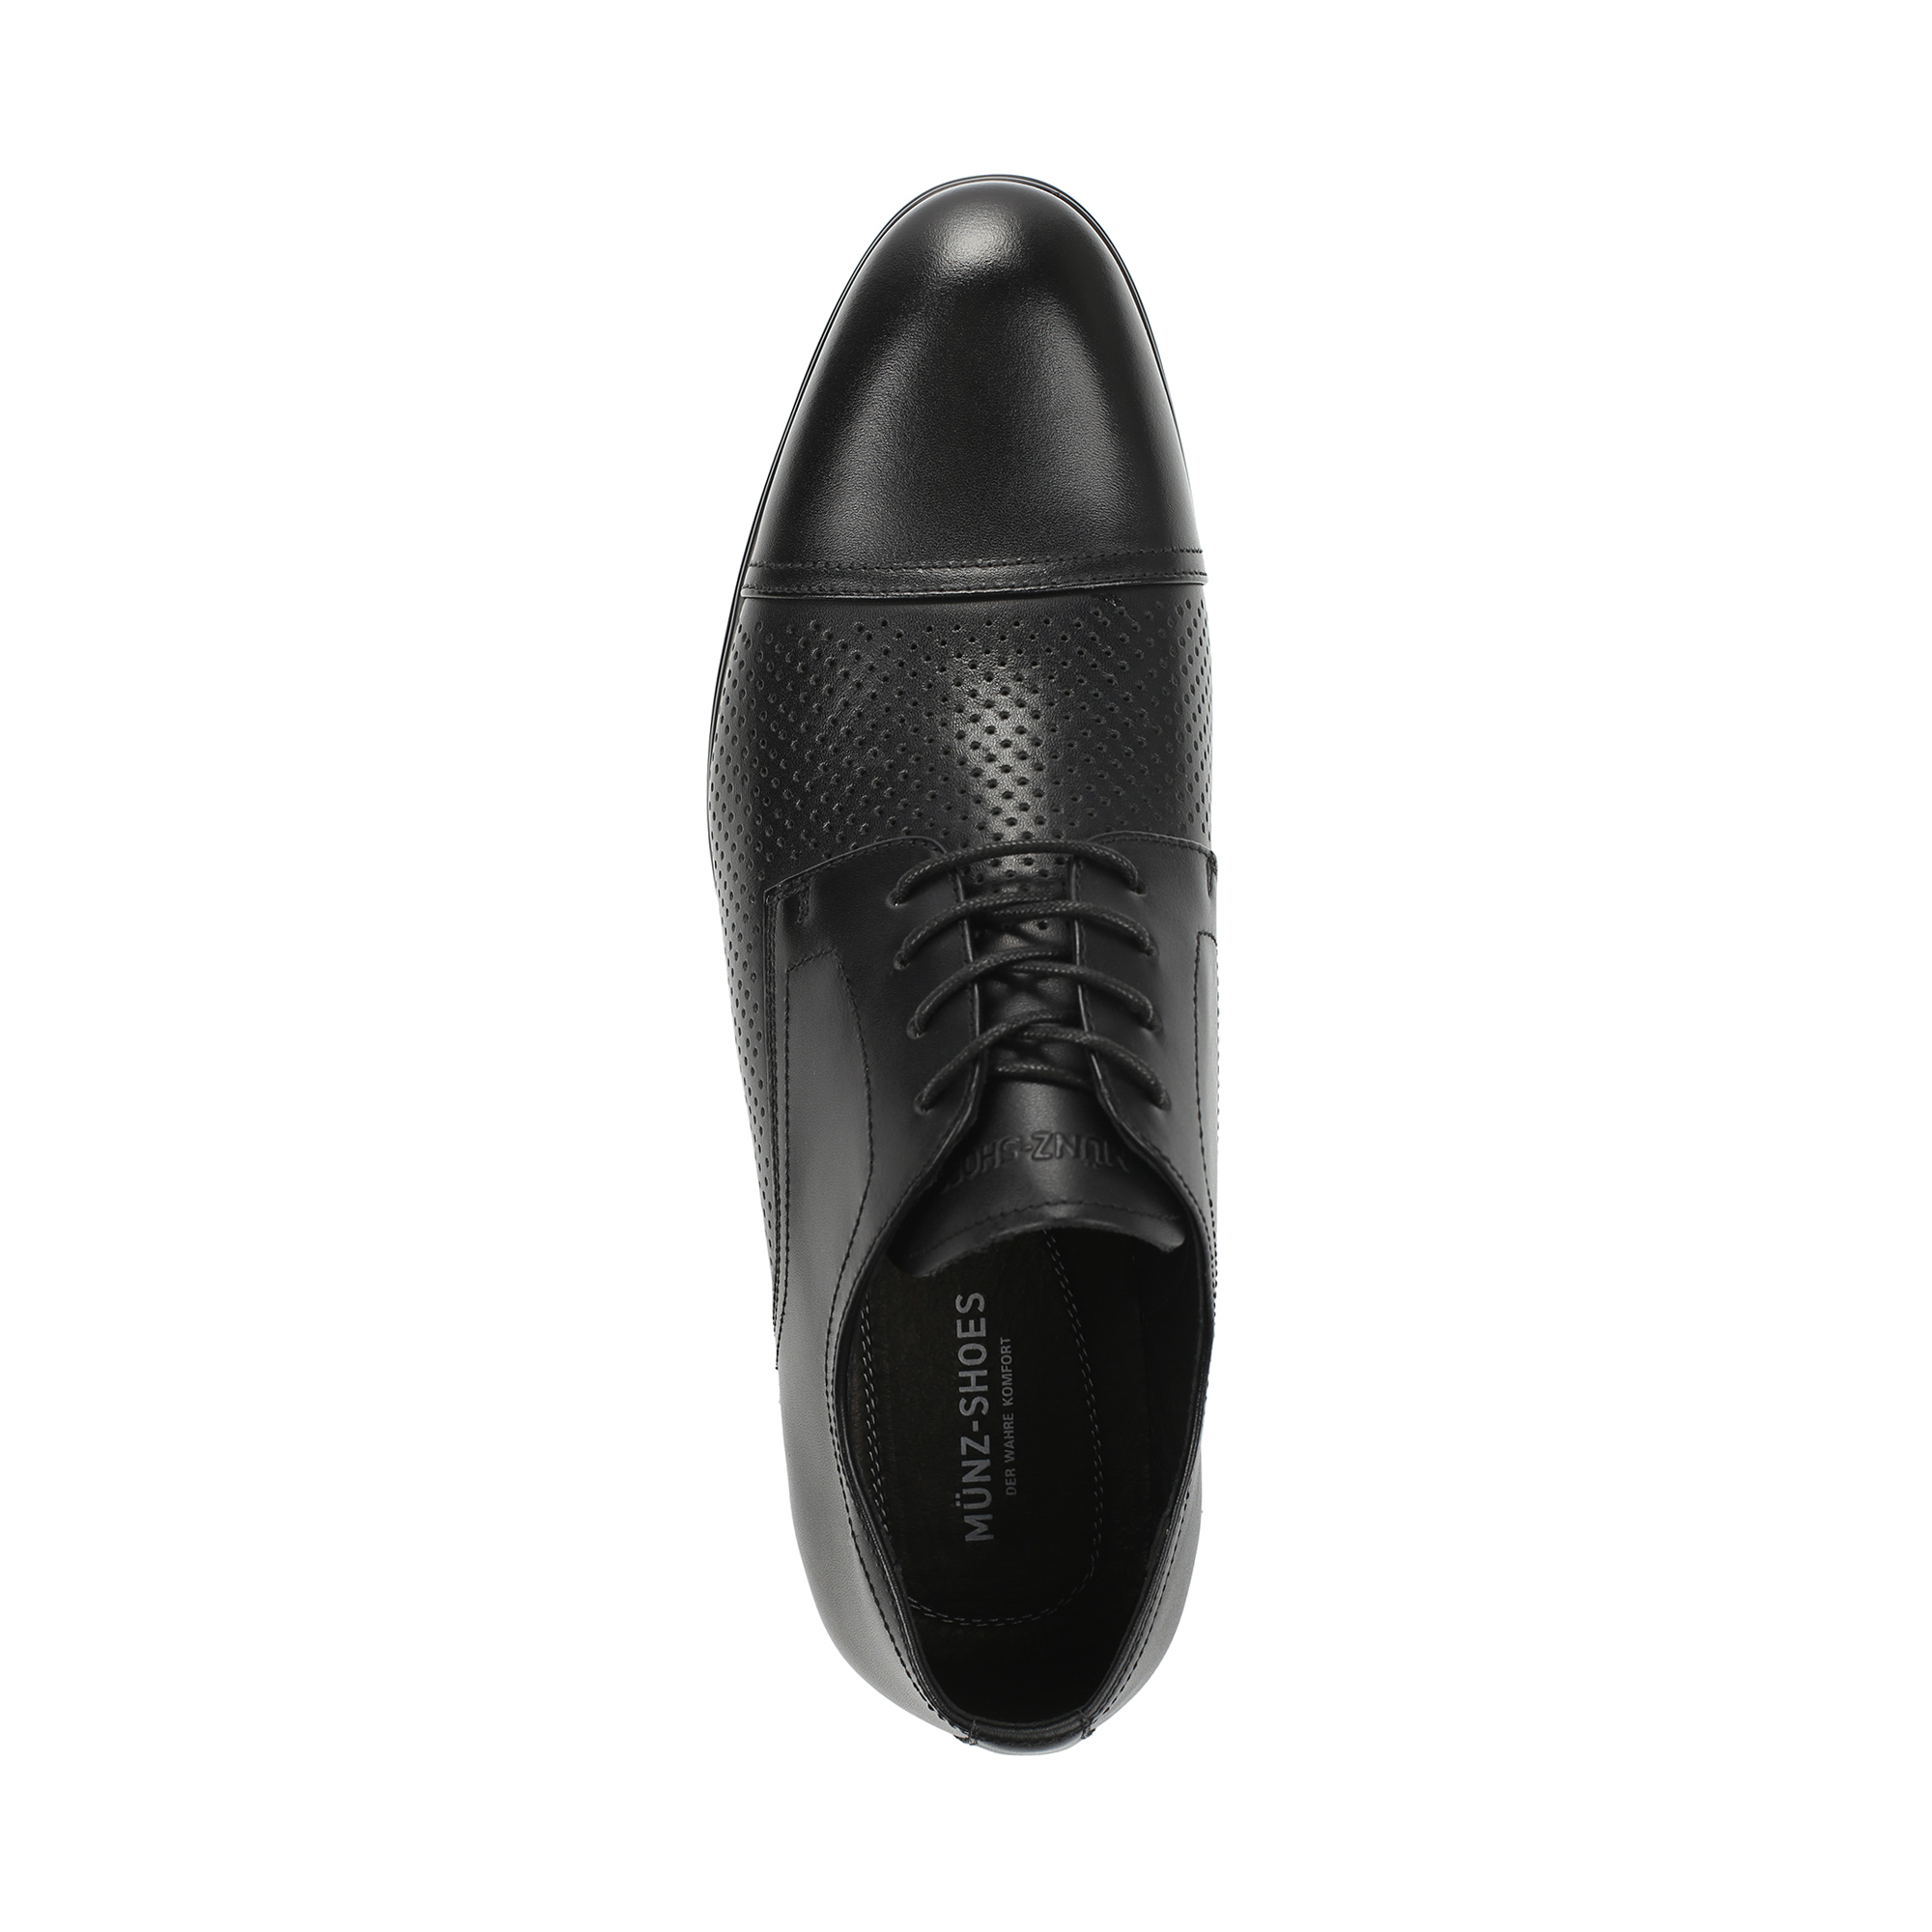 Туфли MUNZ Shoes 104-072E-11002 104-072E-11002, цвет черный, размер 45 полуботинки - фото 5